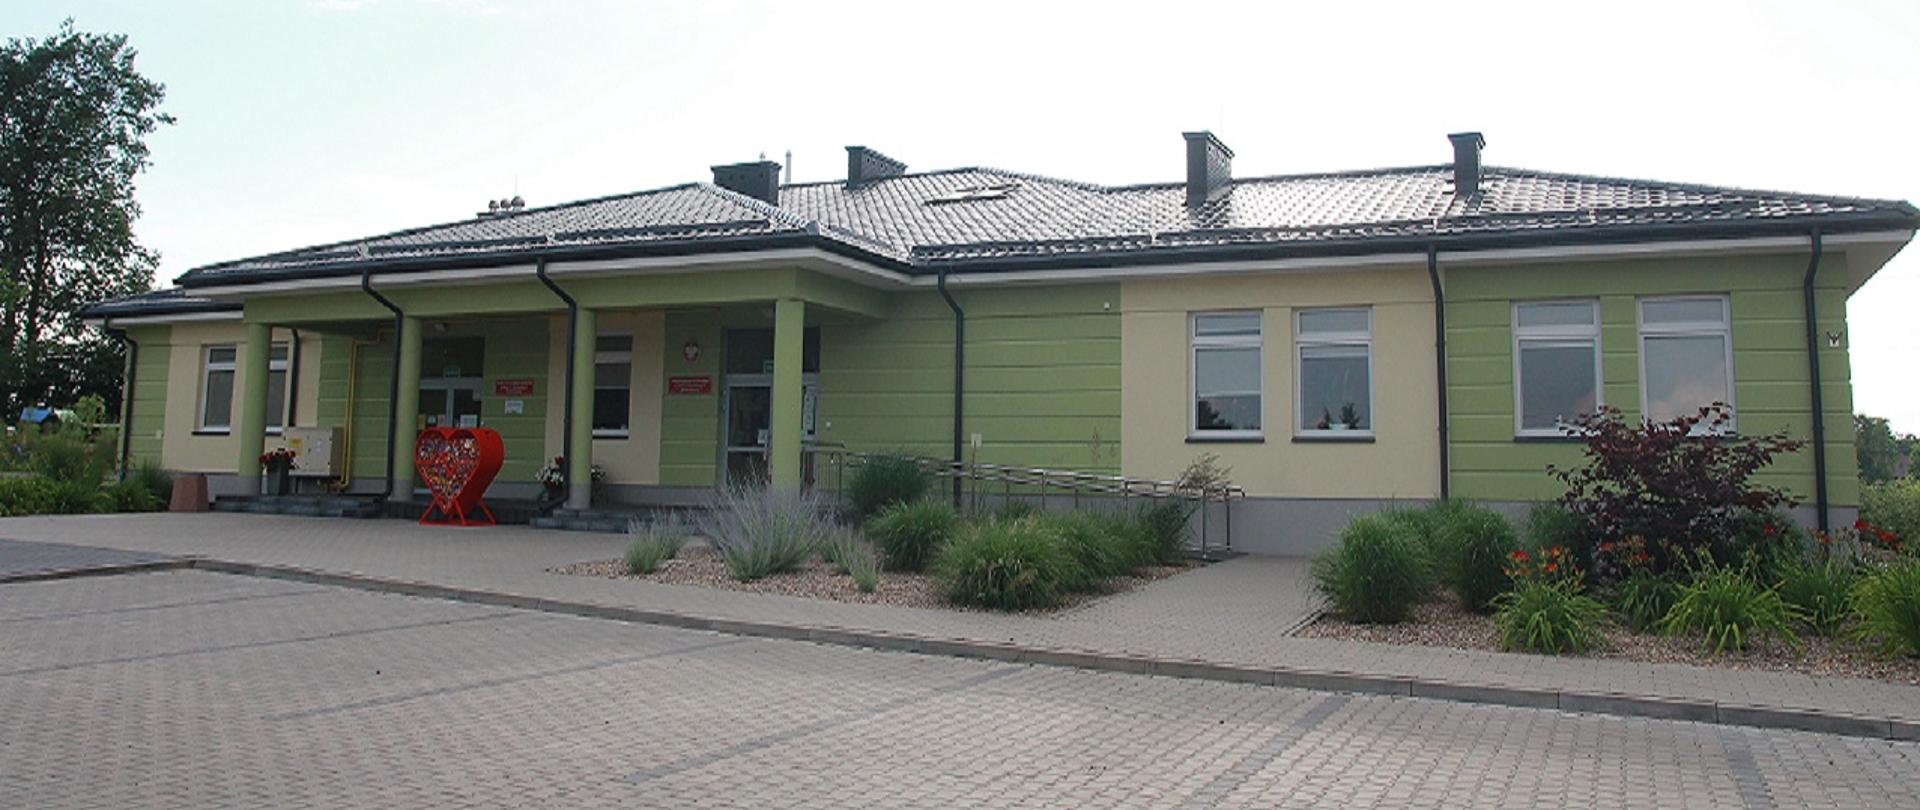 budynek przedszkola w Górznie